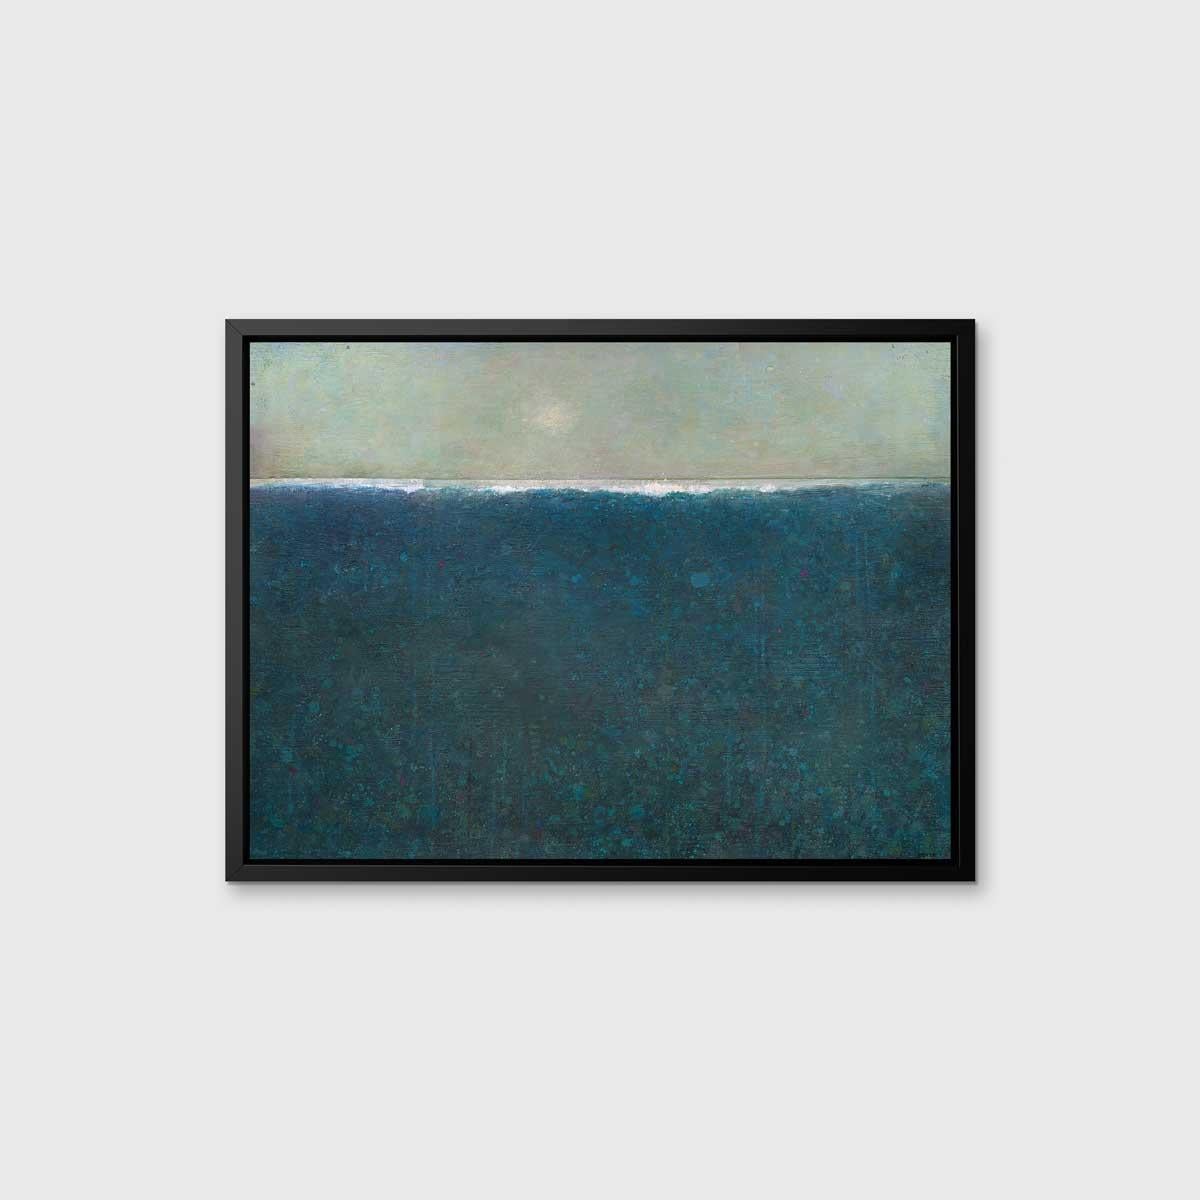 Ce paysage abstrait en édition limitée d'Elwood Howell présente la ligne d'horizon haute en blanc, signature de l'artiste. Sous la ligne se cache un bleu profond texturé, composé de petites formes et de couches. Au-dessus de l'horizon se trouve un